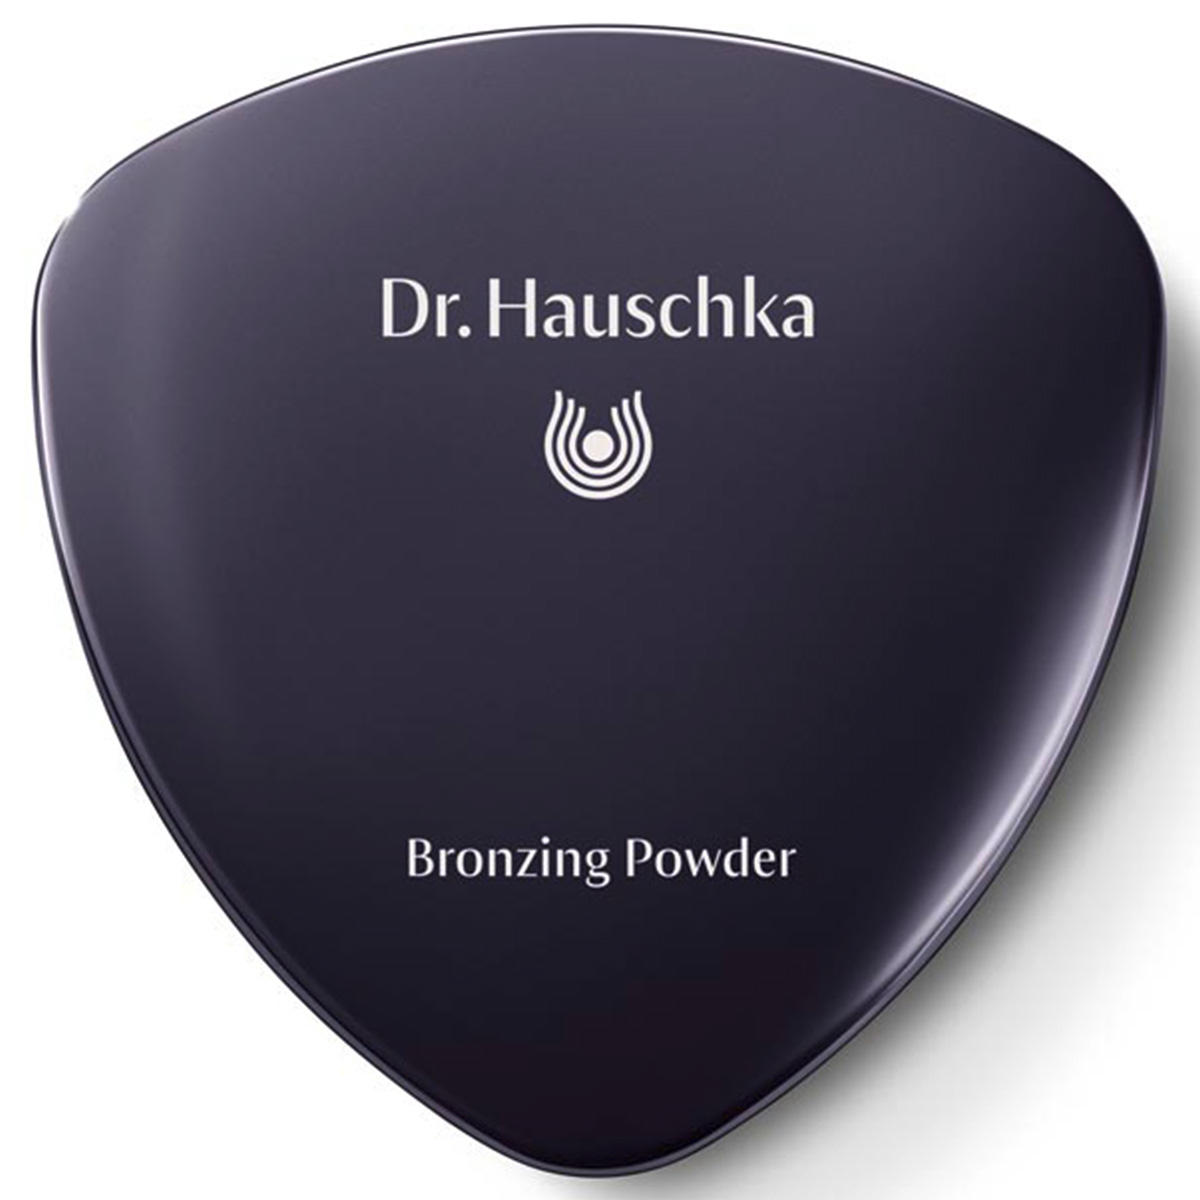 Dr. Hauschka Bronzing Powder 01 bronze, contenu 10 g - 2